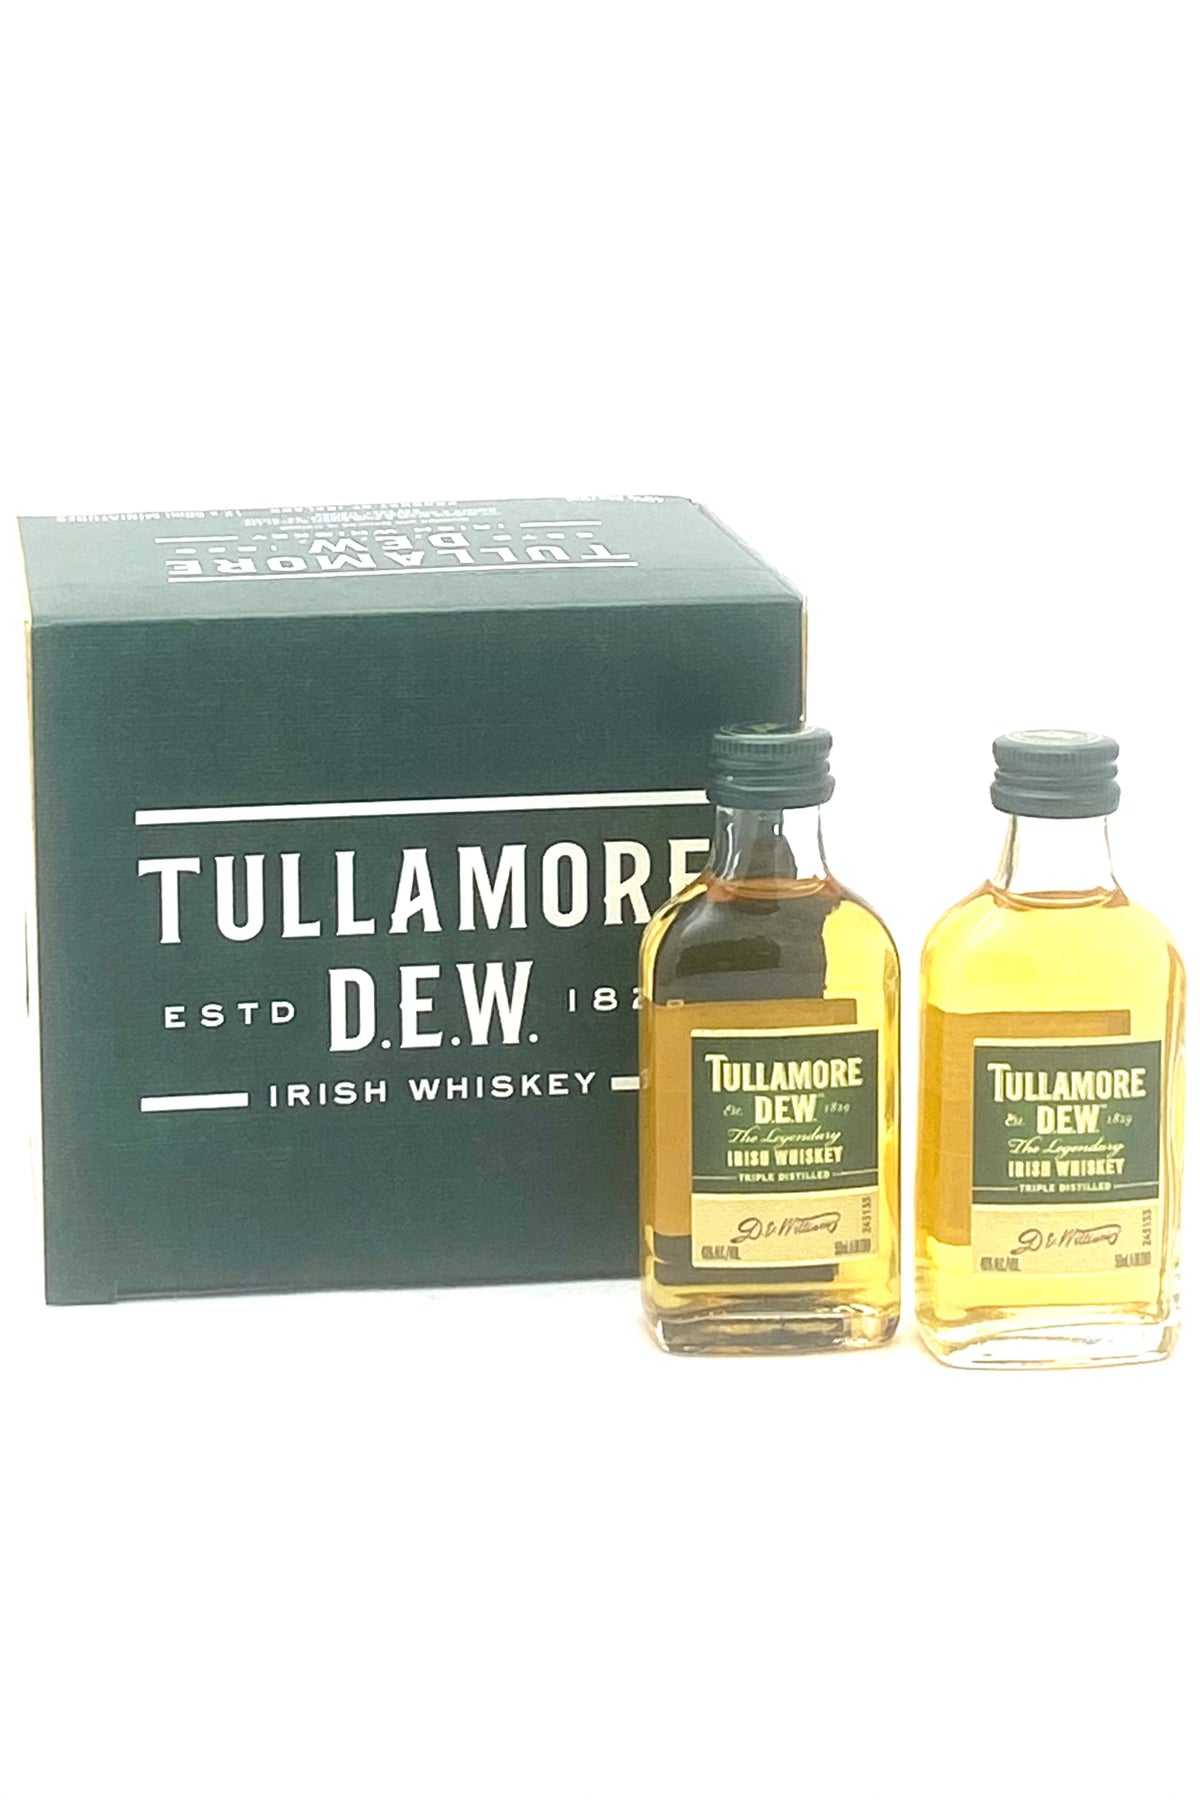 Tullamore Dew Irish Whiskey 12 x 50 ml